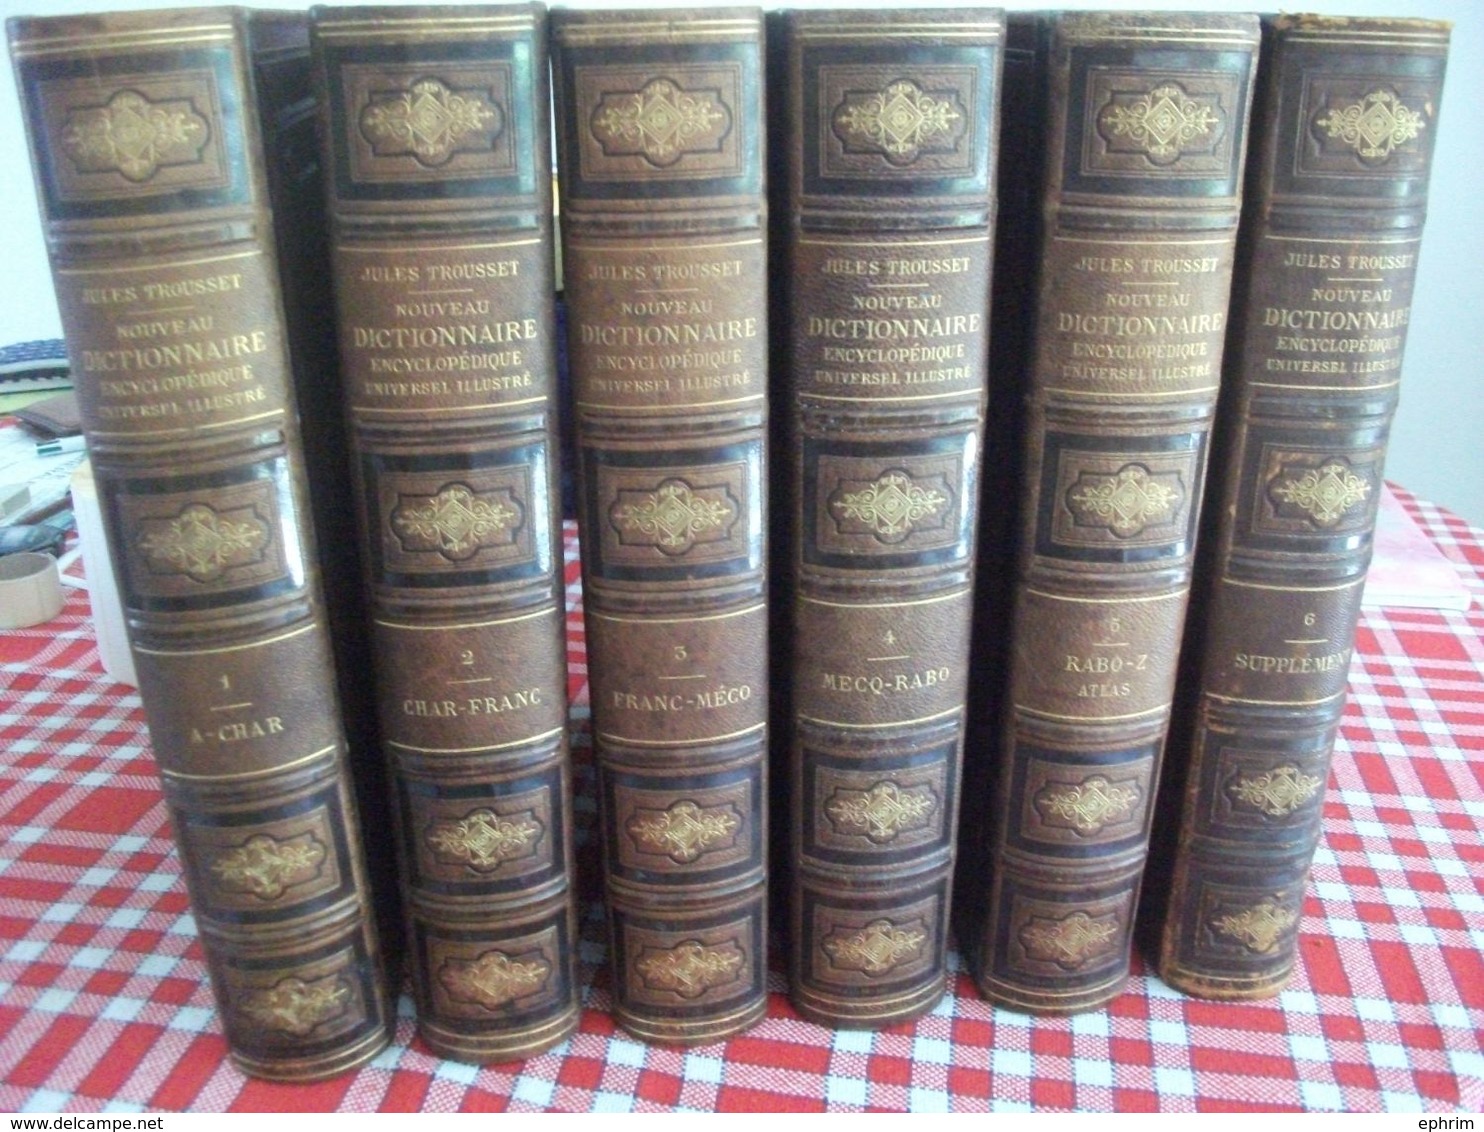 Jules Trousset Nouveau Dictionnaire Encyclopédique Complet 6 Volumes Encyclopédie Carte Géographique Département France - Encyclopaedia